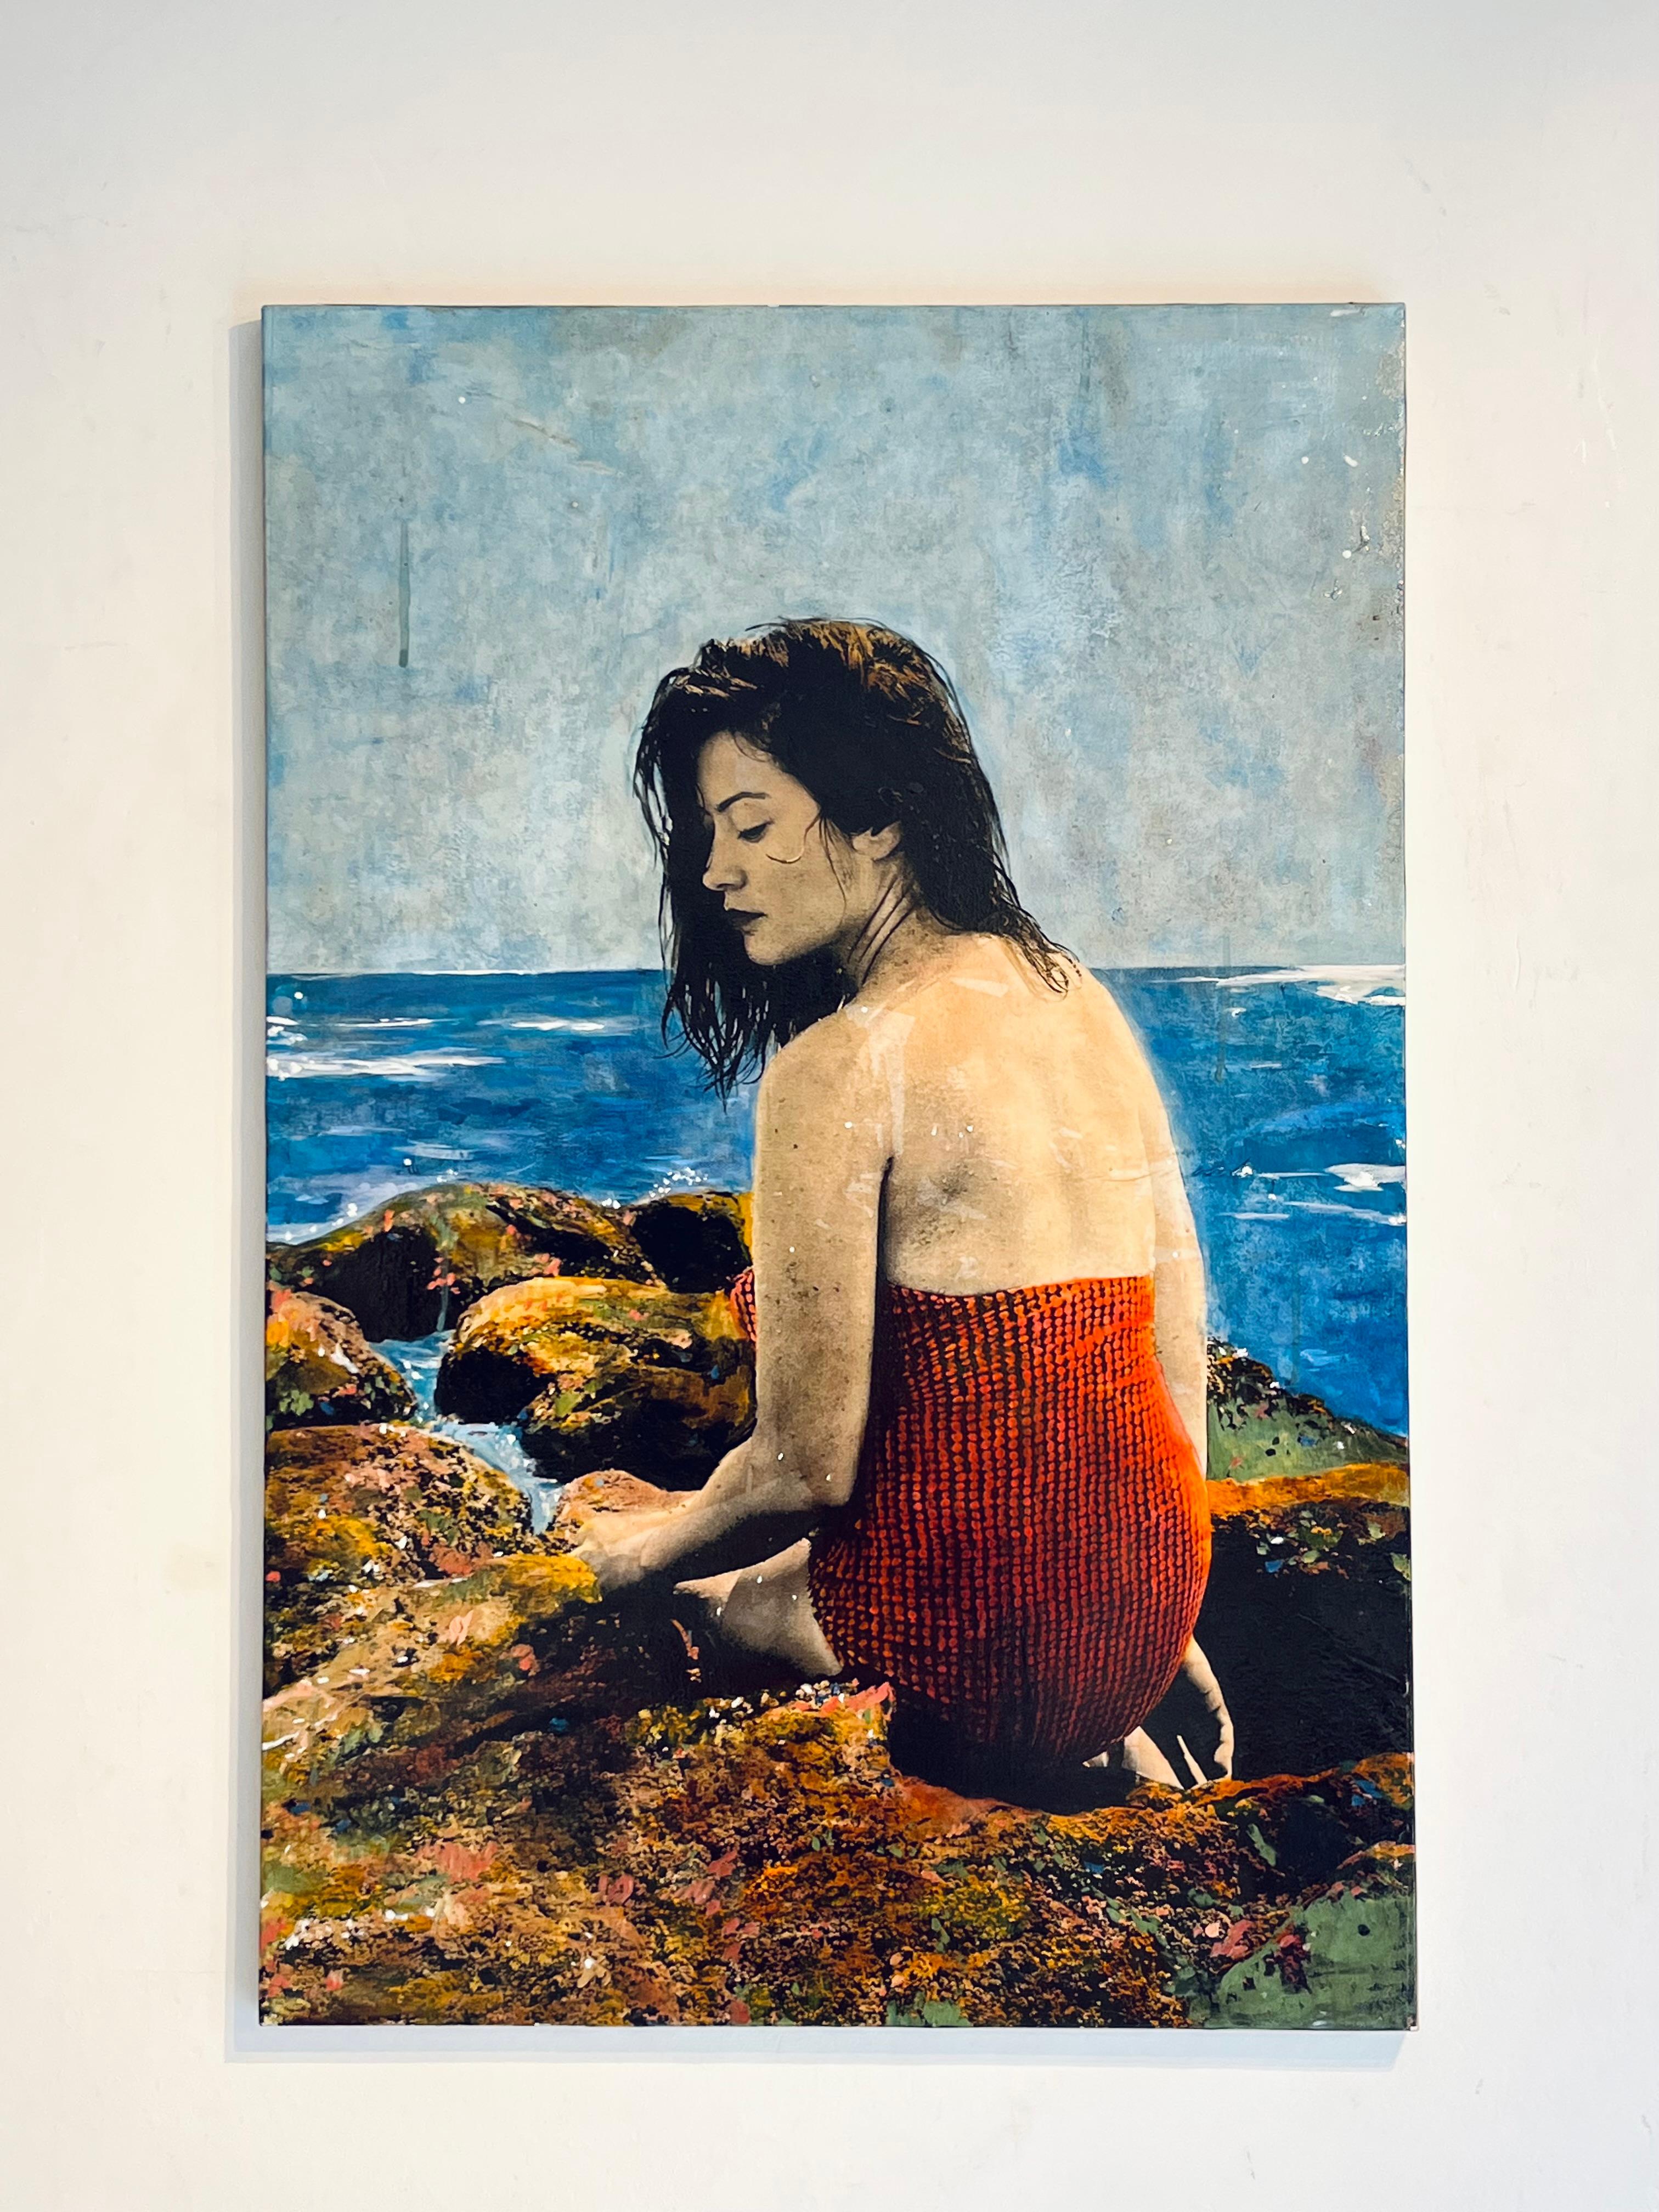 Sirene-originale moderne weibliche figurative-landschaftliche Malerei-zeitgenössisches Kunstwerk – Painting von Ayline Olukman